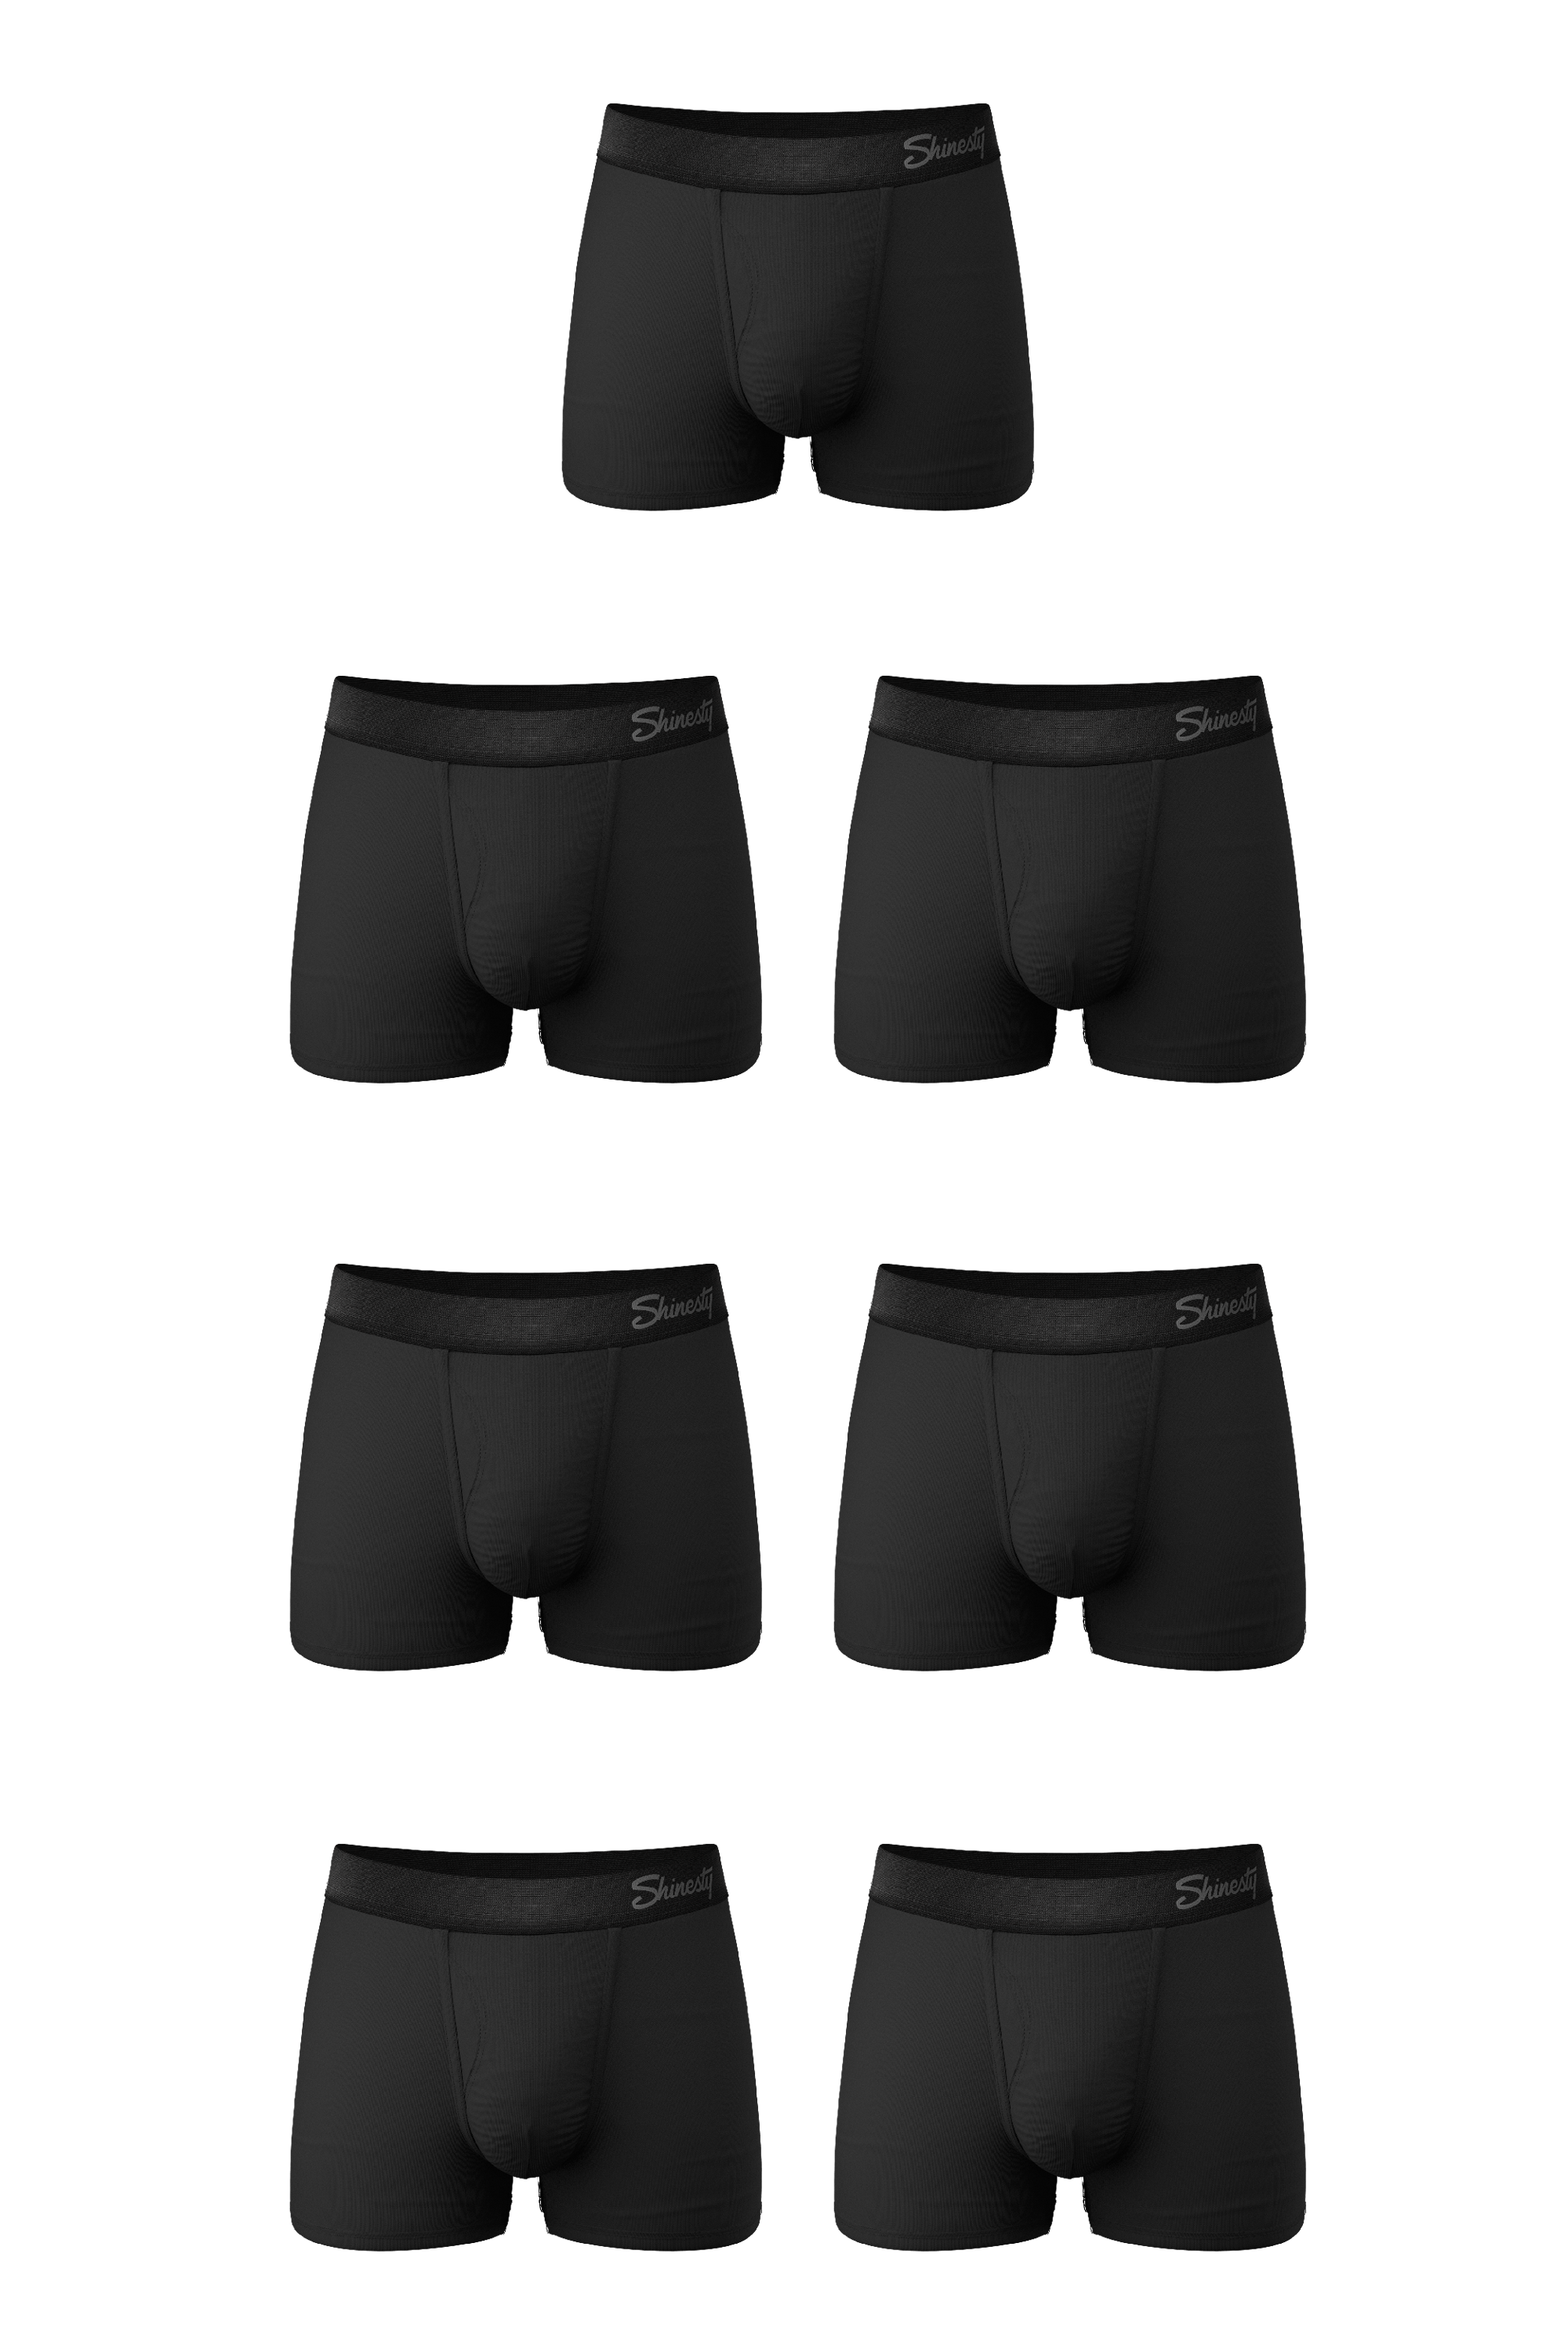 The Threat Level Midnight - Shinesty Black Ball Hammock Pouch Underwear 4X  